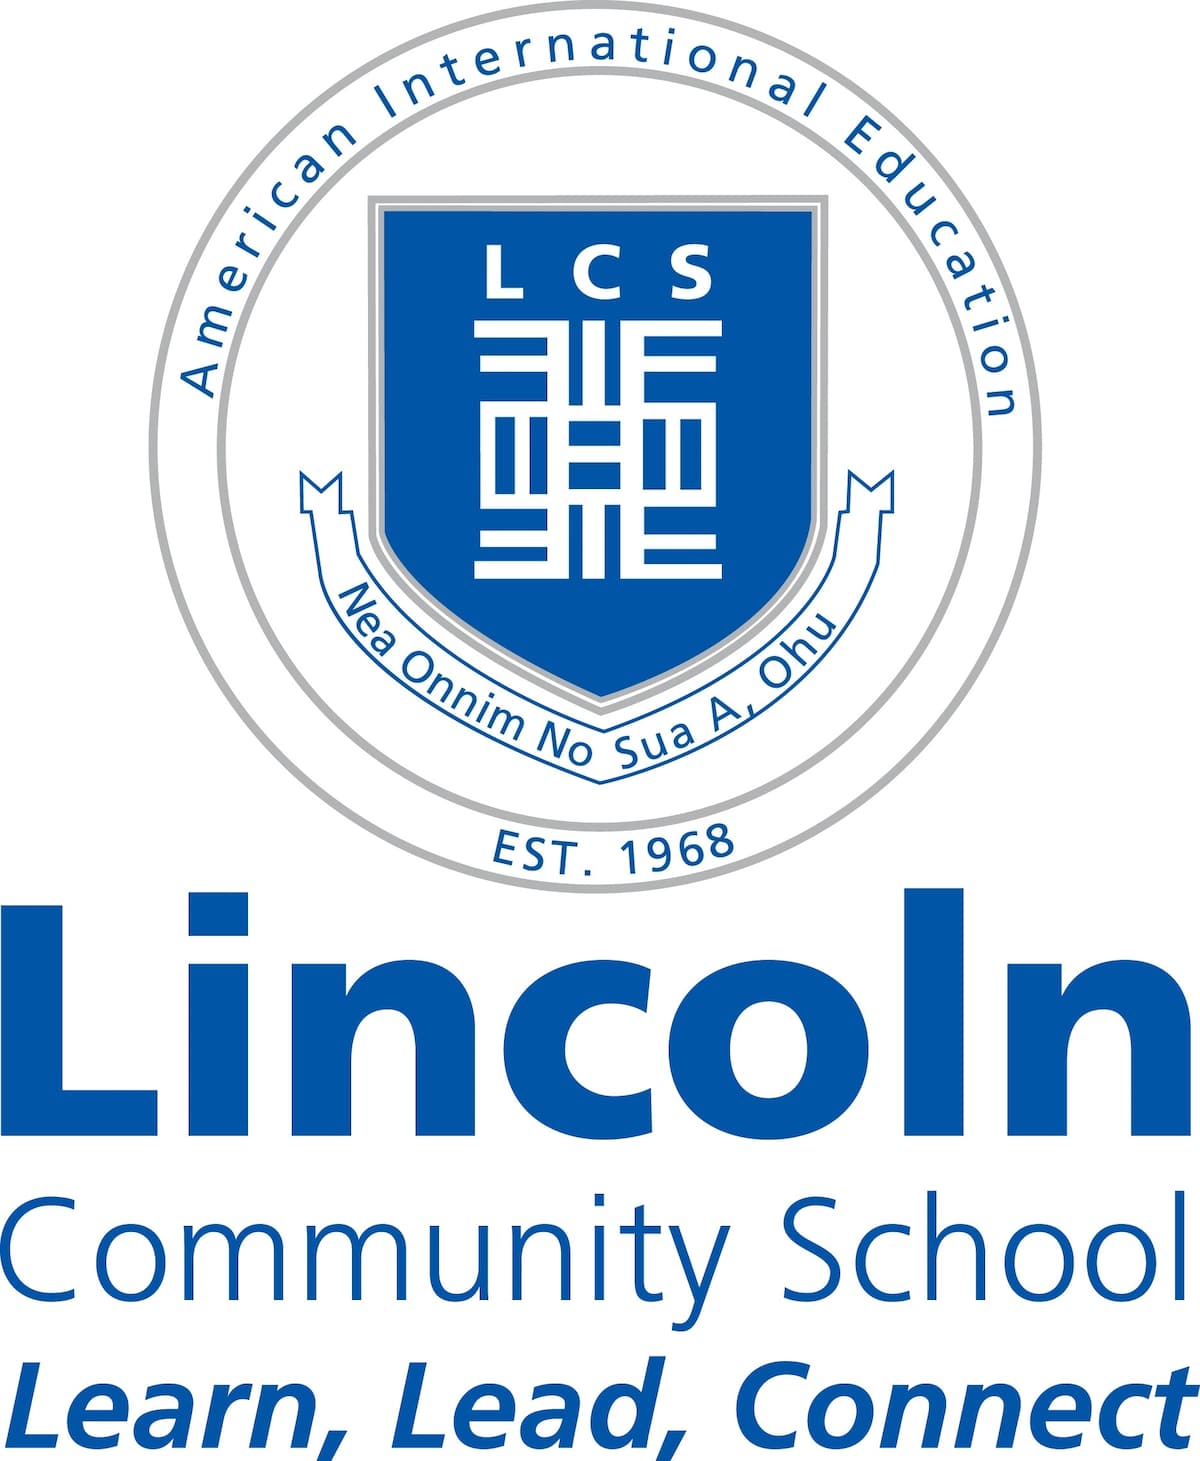 lincoln community school
lincoln community school ghana
lincoln community school fees